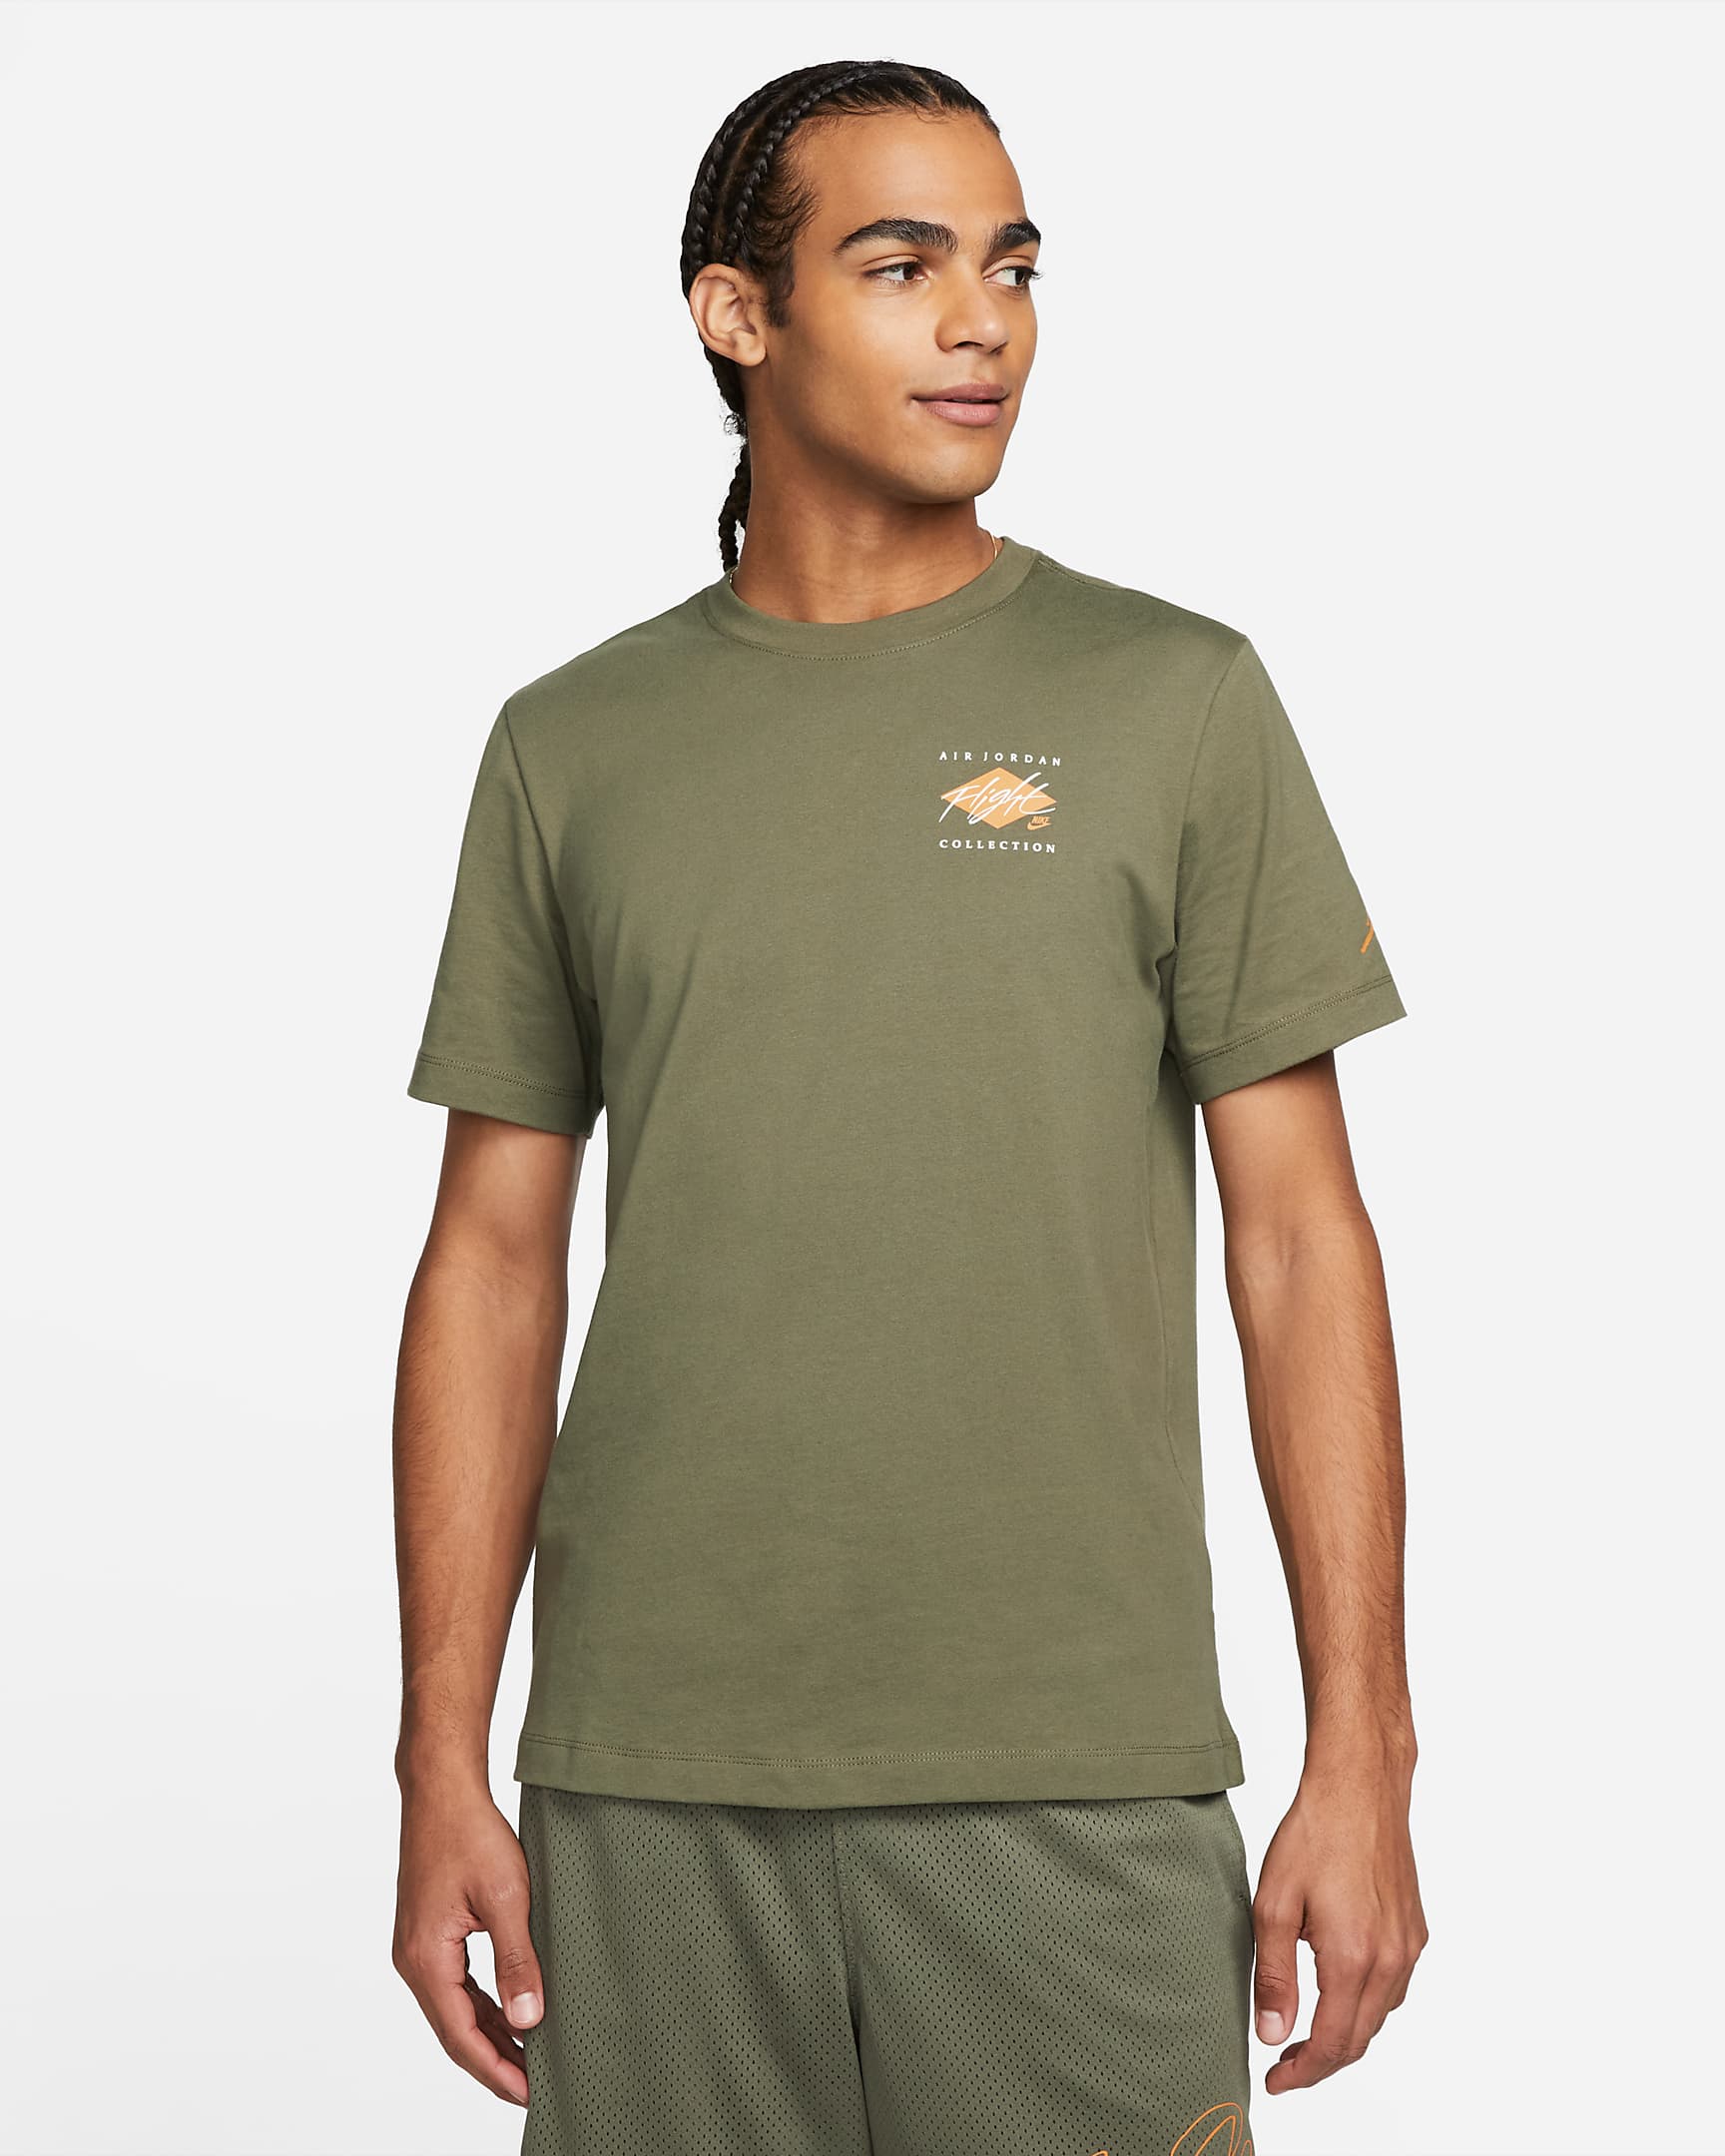 jordan-flight-essentials-mens-graphic-t-shirt-16sGpK.png